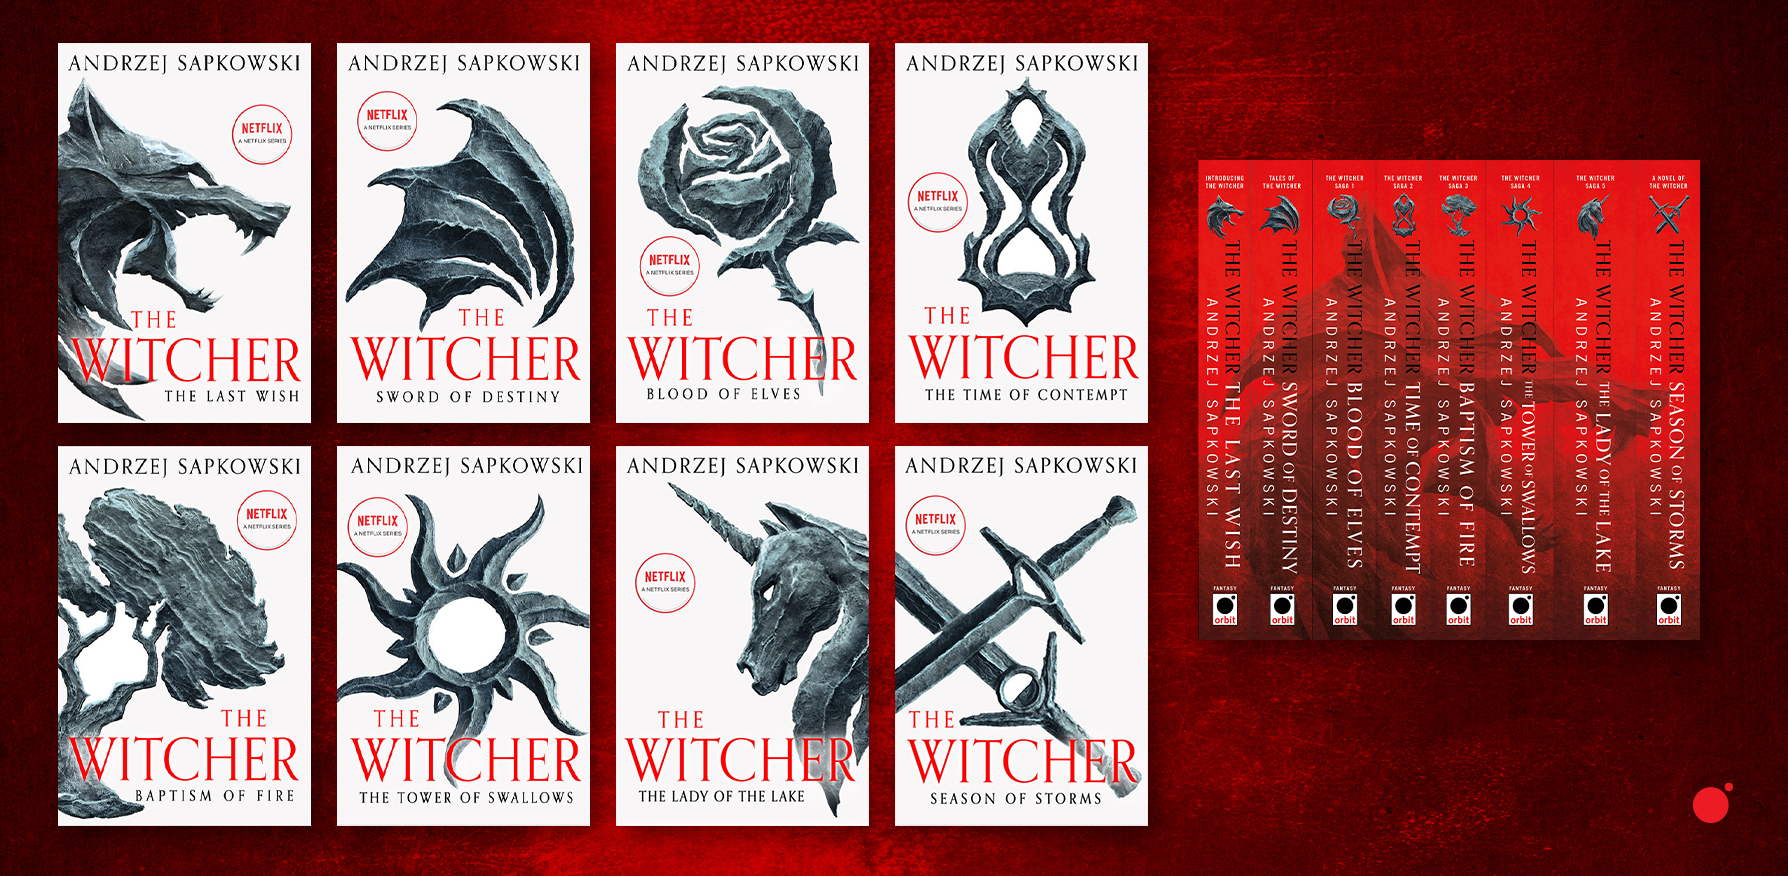 Andrzej Sapkowski's Witcher Books in Order